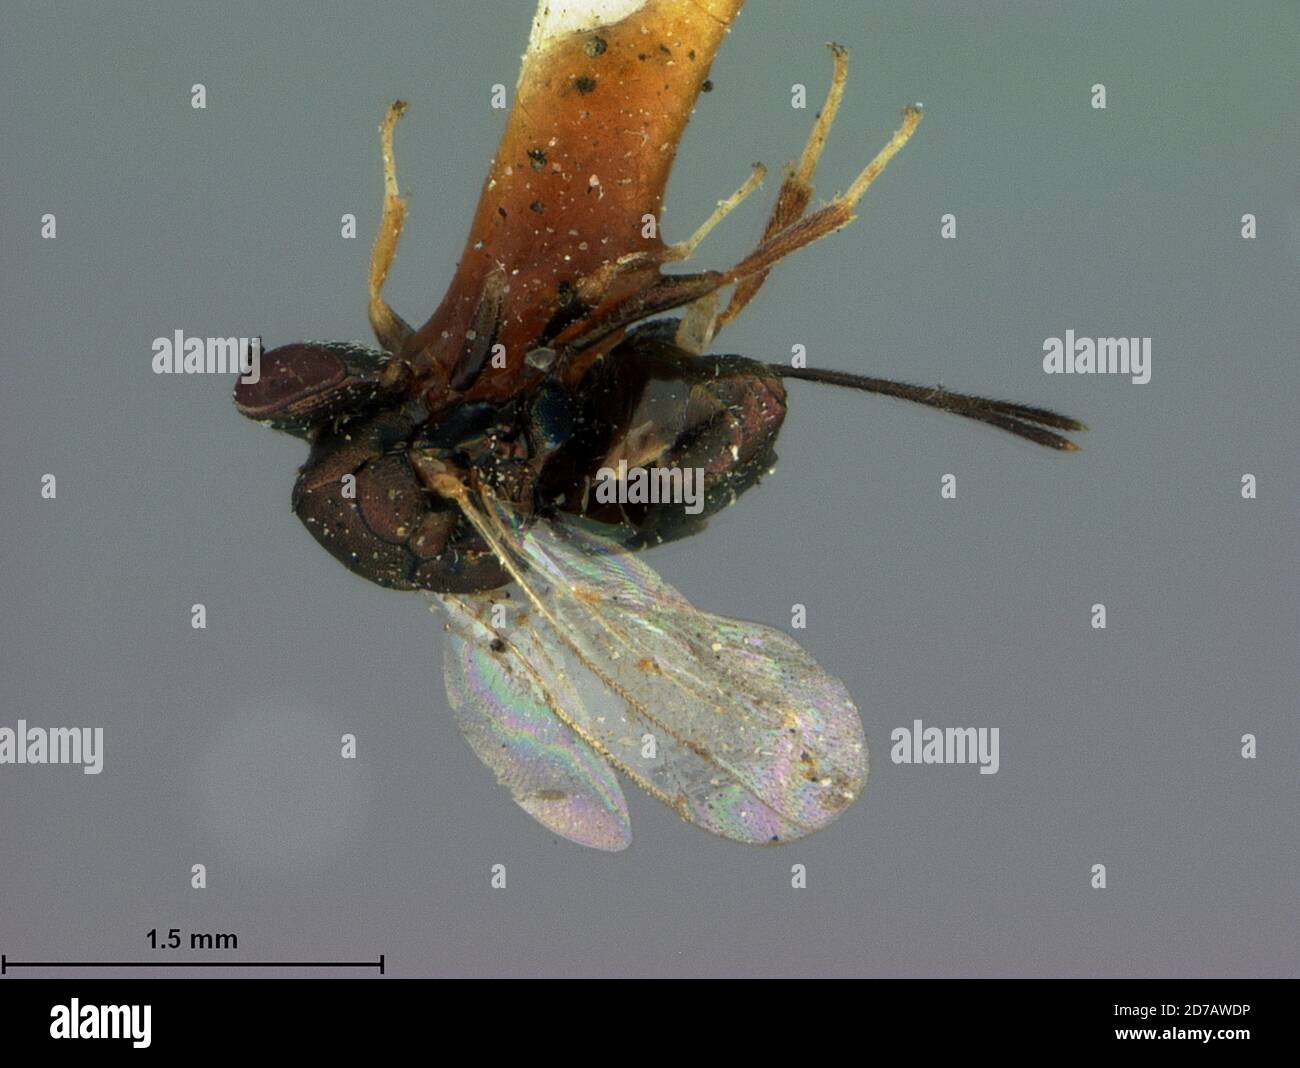 Jacksonville, Duval, Florida, United States, Callimome aenea Ashmead, 1881, Animalia, Arthropoda, Insecta, Hymenoptera, Torymidae Stock Photo